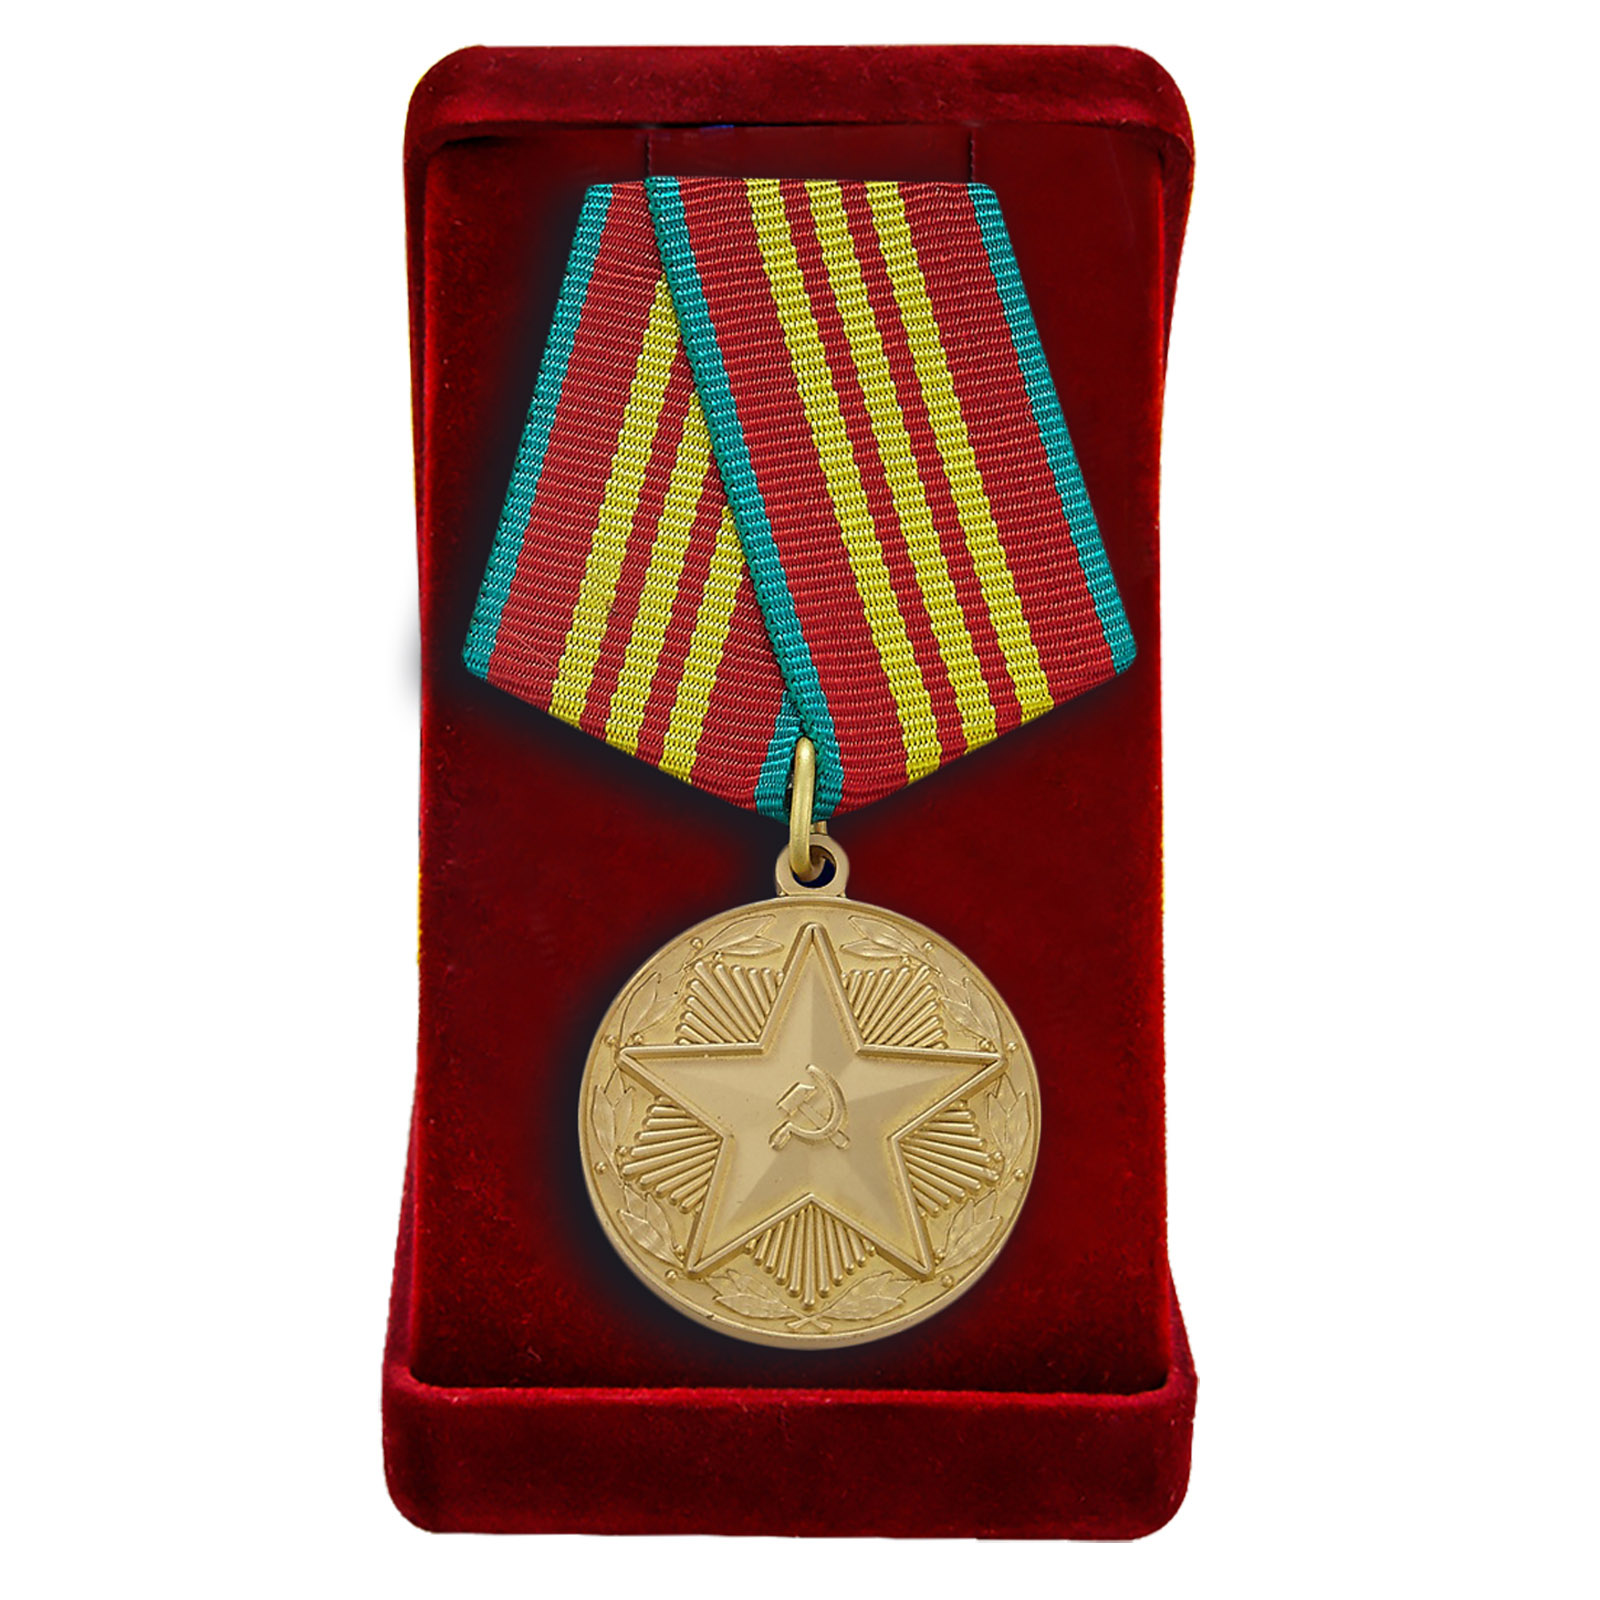 Реплика медали "За безупречную службу в Вооруженных Силах" третьей степени 